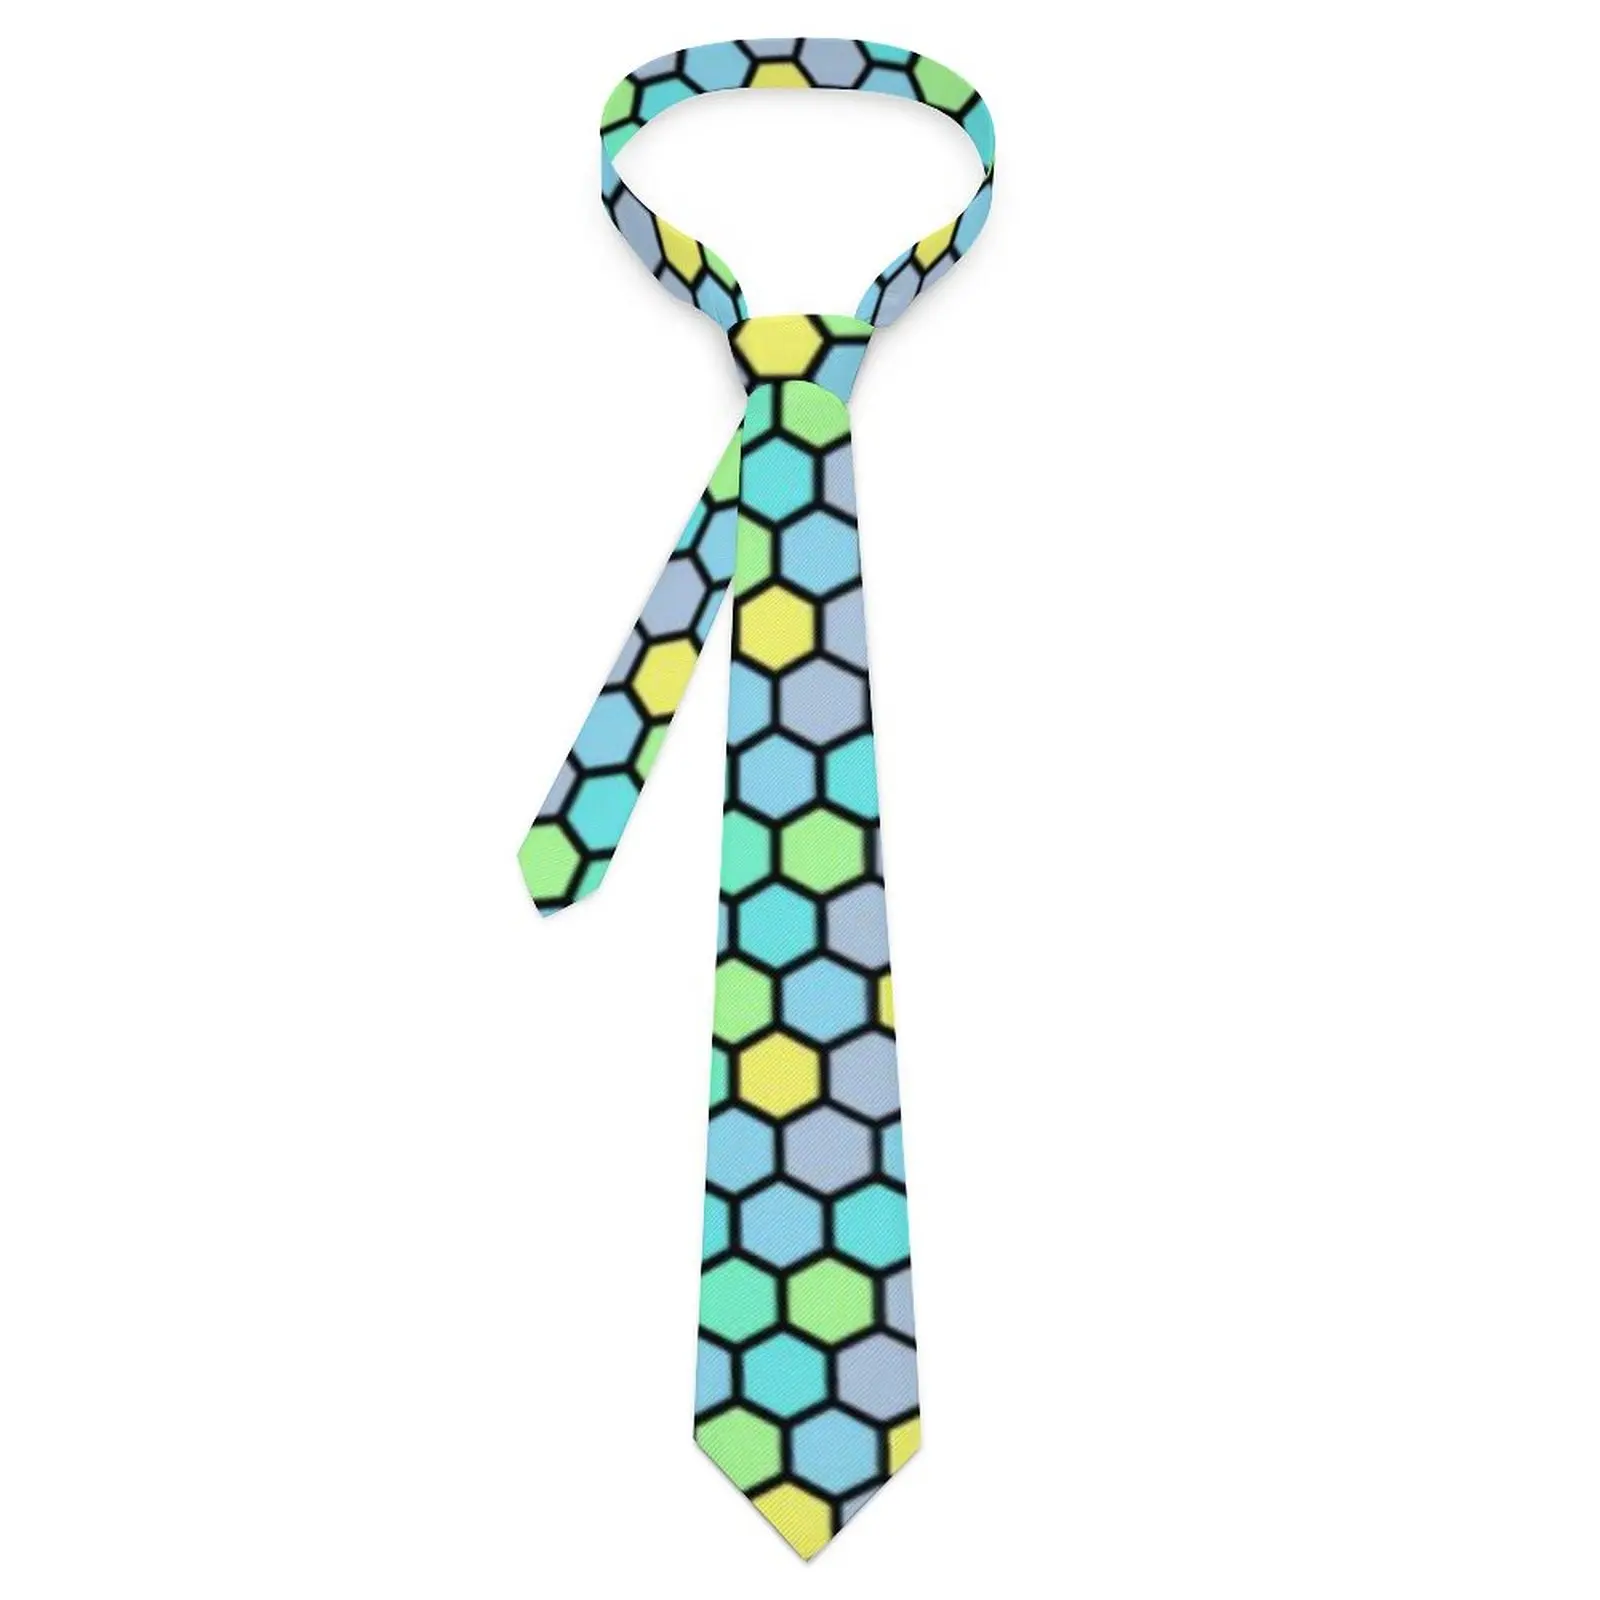 

Галстук с абстрактным геометрическим рисунком, красочный улей, повседневная одежда, галстуки для шеи, мужской Милый Забавный галстук с графическим рисунком, качественный галстук для воротника